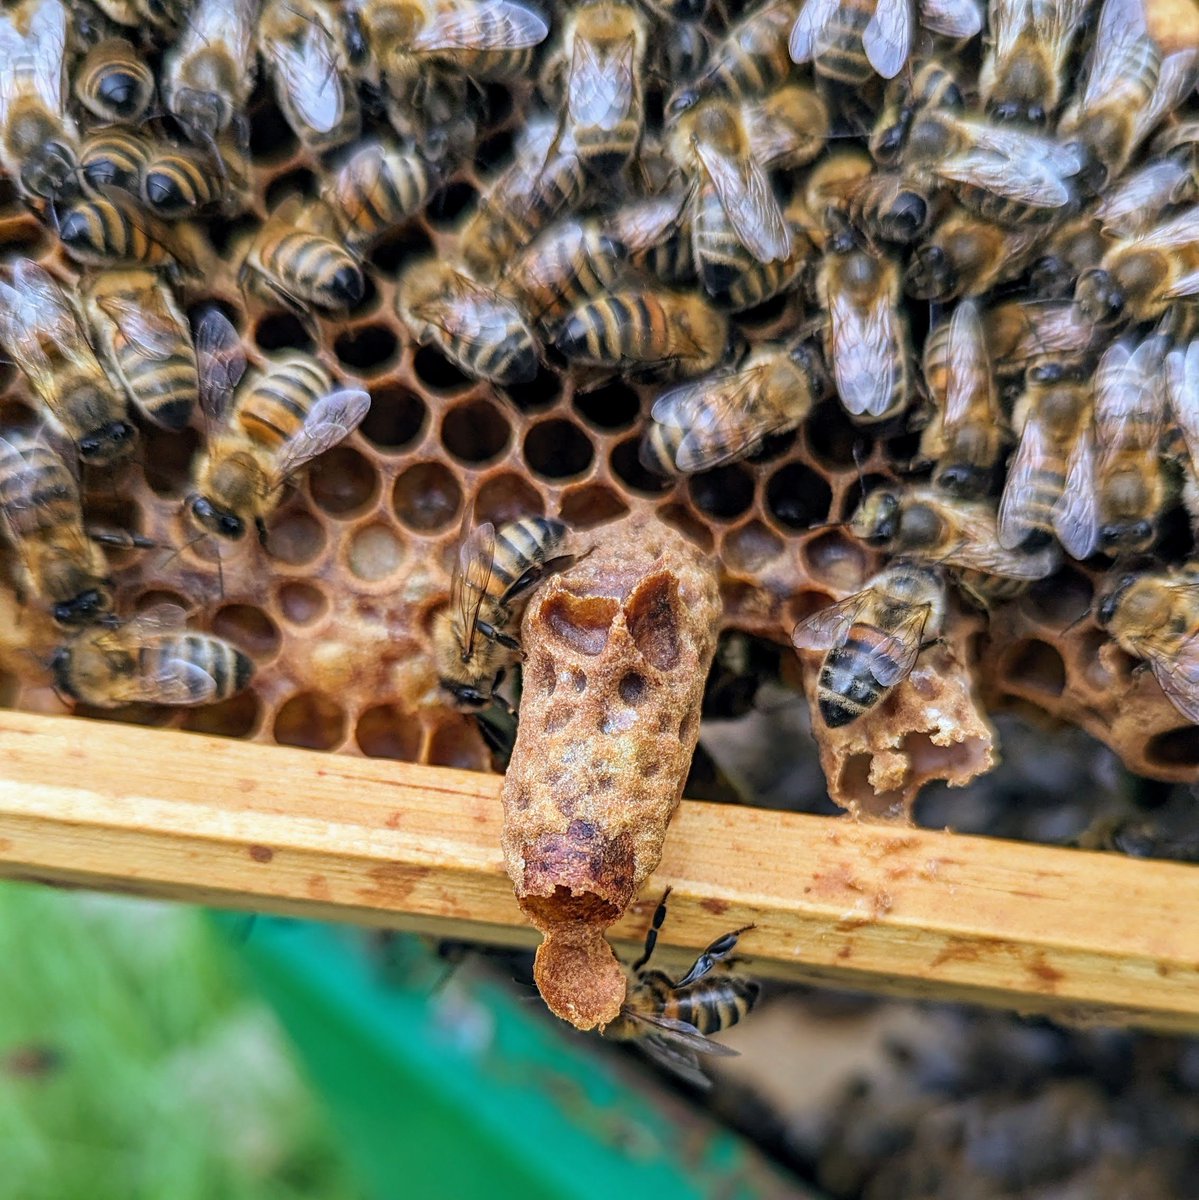 An emerged queen cell.
#NorfolkHoneyCo
#StewartSpinks
#BeekeepingForAll
#Beekeeping
#Honeybees
#BeeFarmer